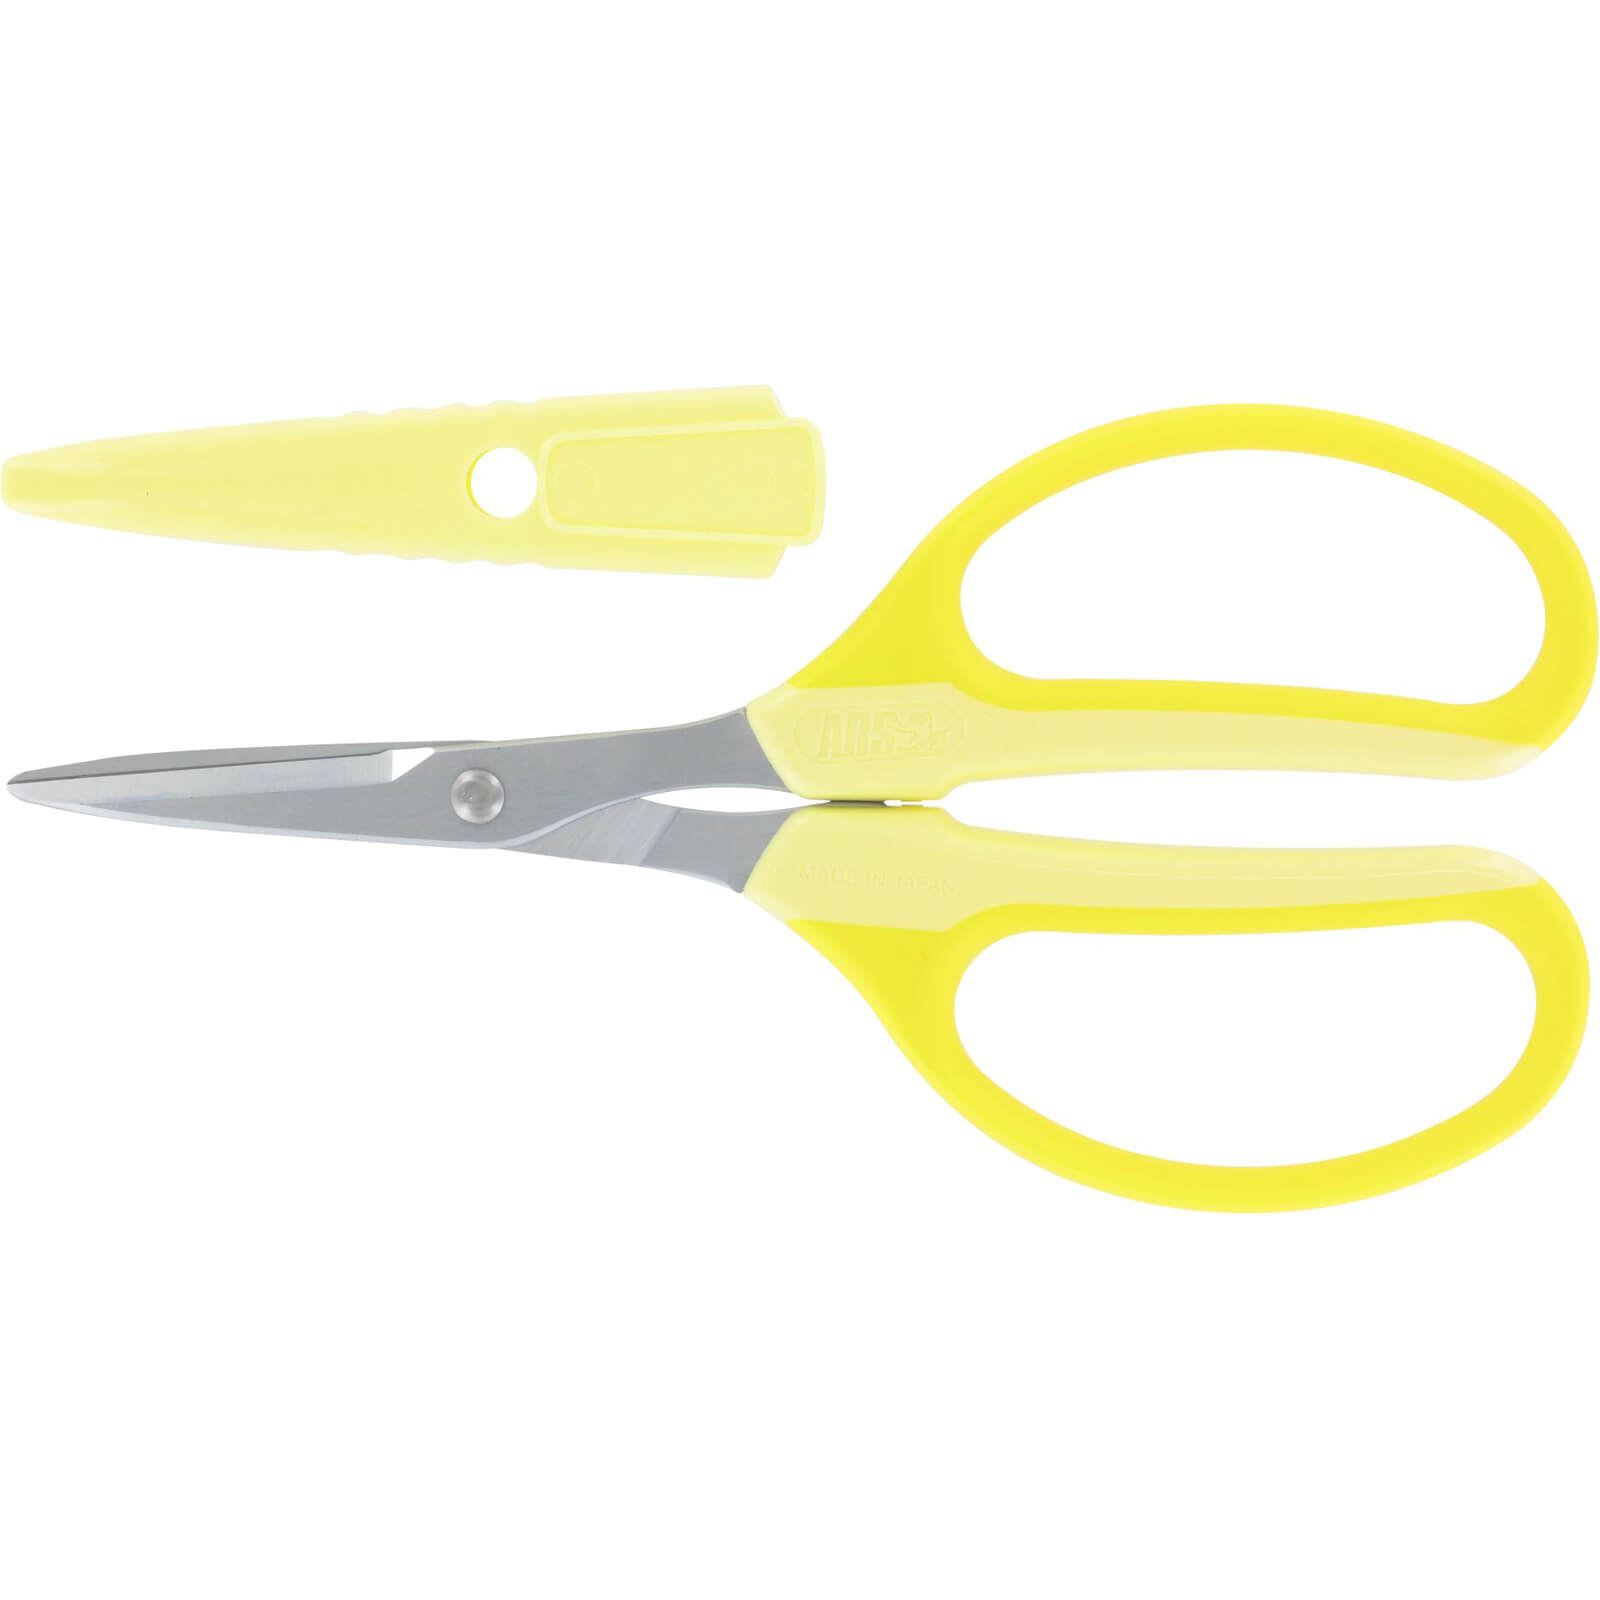 ARS 330HN General Purpose Scissors Yellow